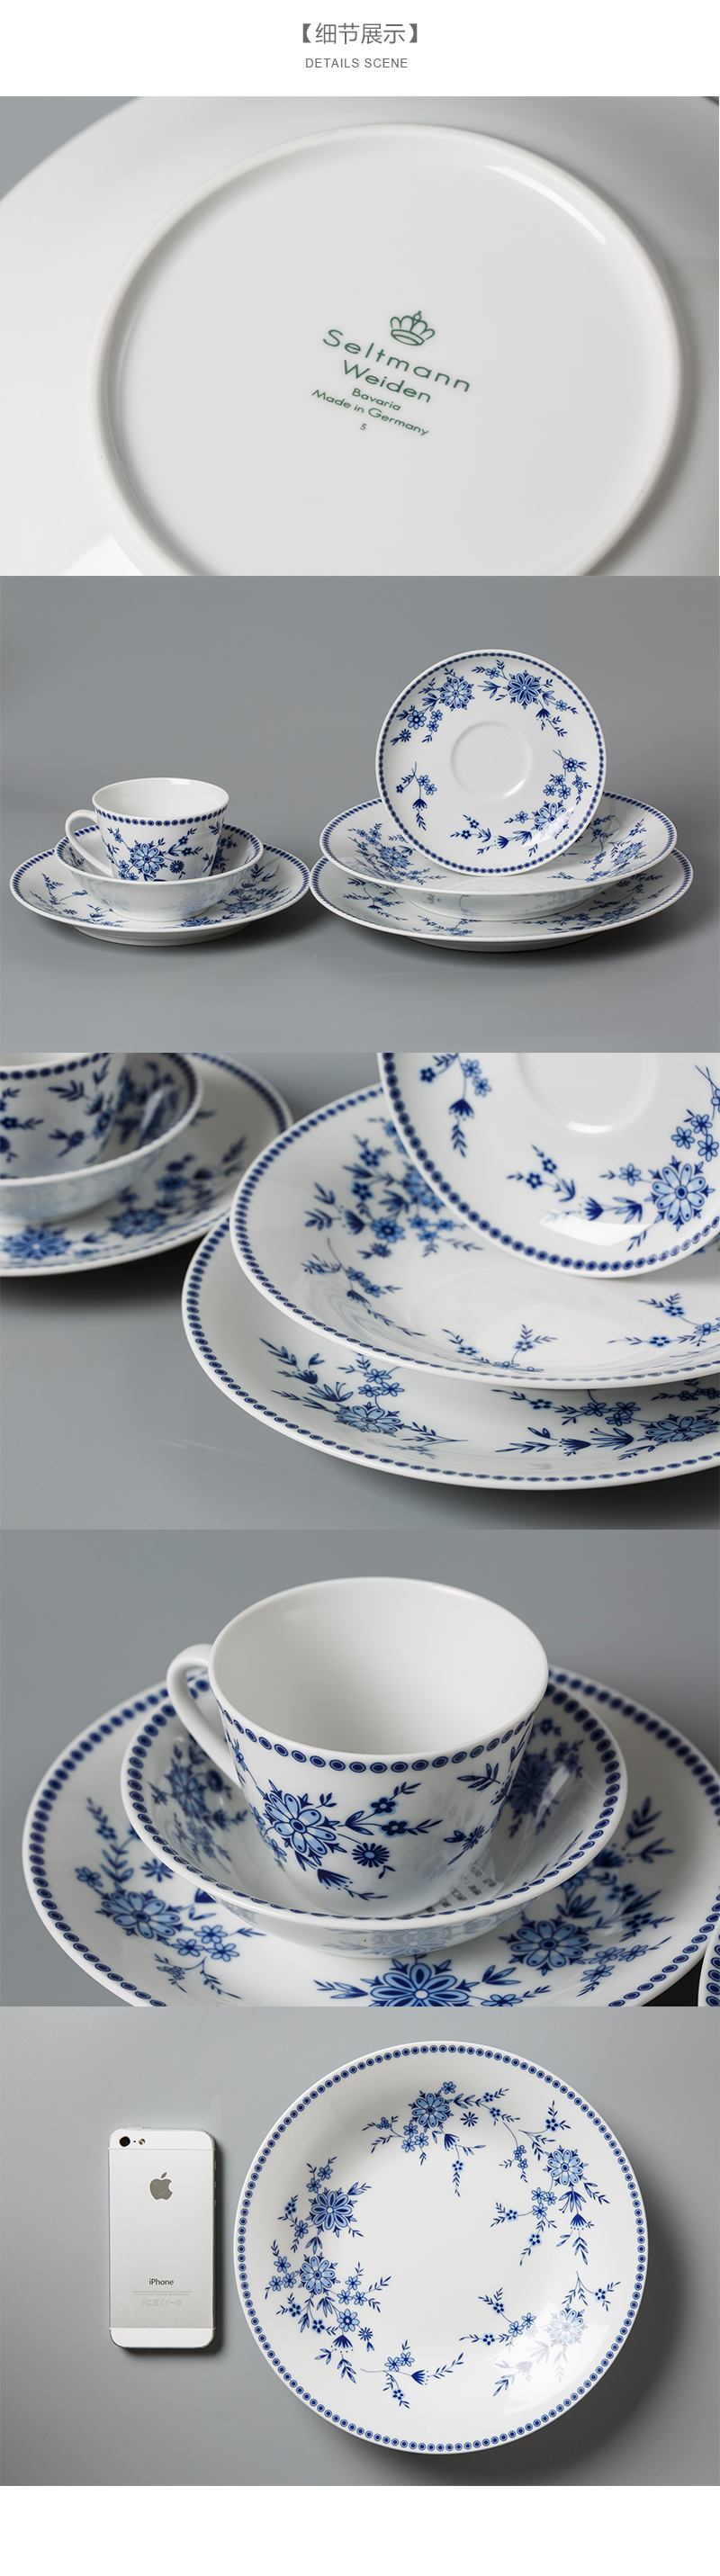 德国原产Seltmann Weiden青花陶瓷碗西餐具细节展示